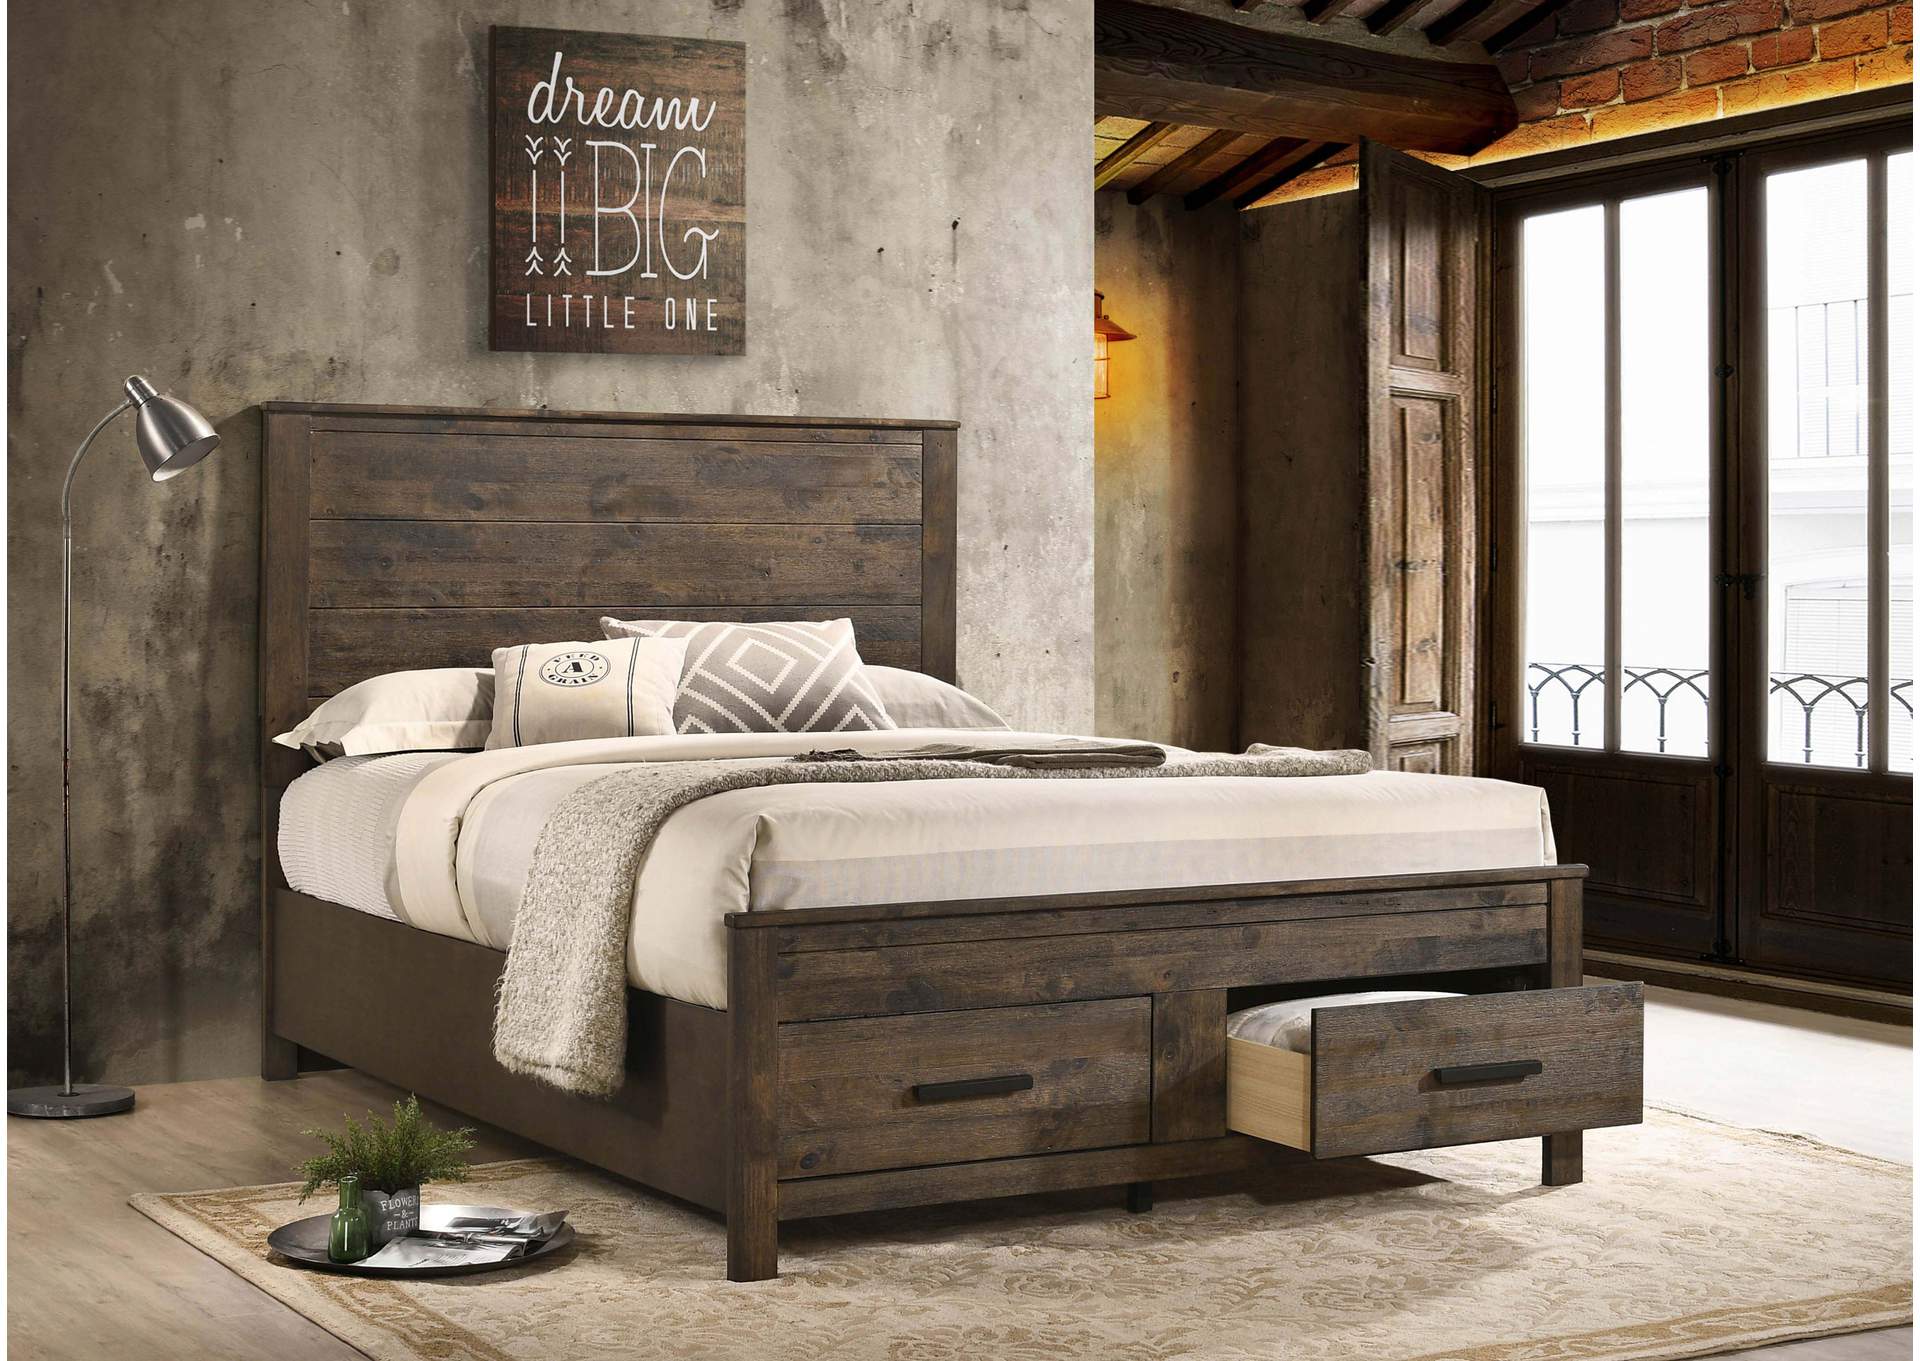 Woodmont Queen Storage Bed Rustic Golden Brown,Coaster Furniture